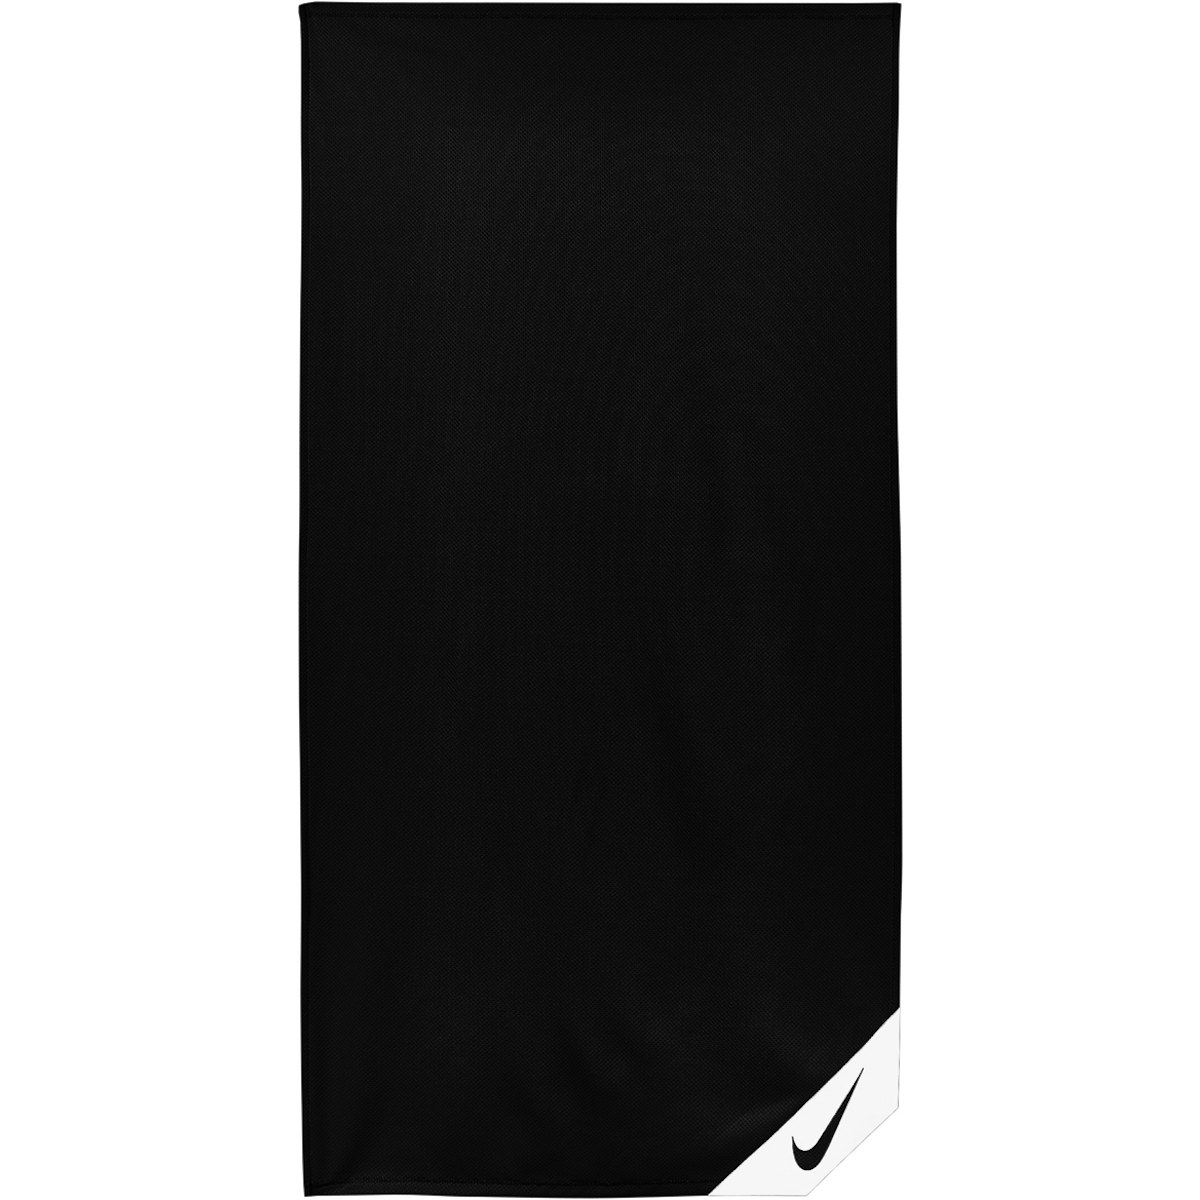 Produktbild von Nike Cooling Small Handtuch - black/white 010